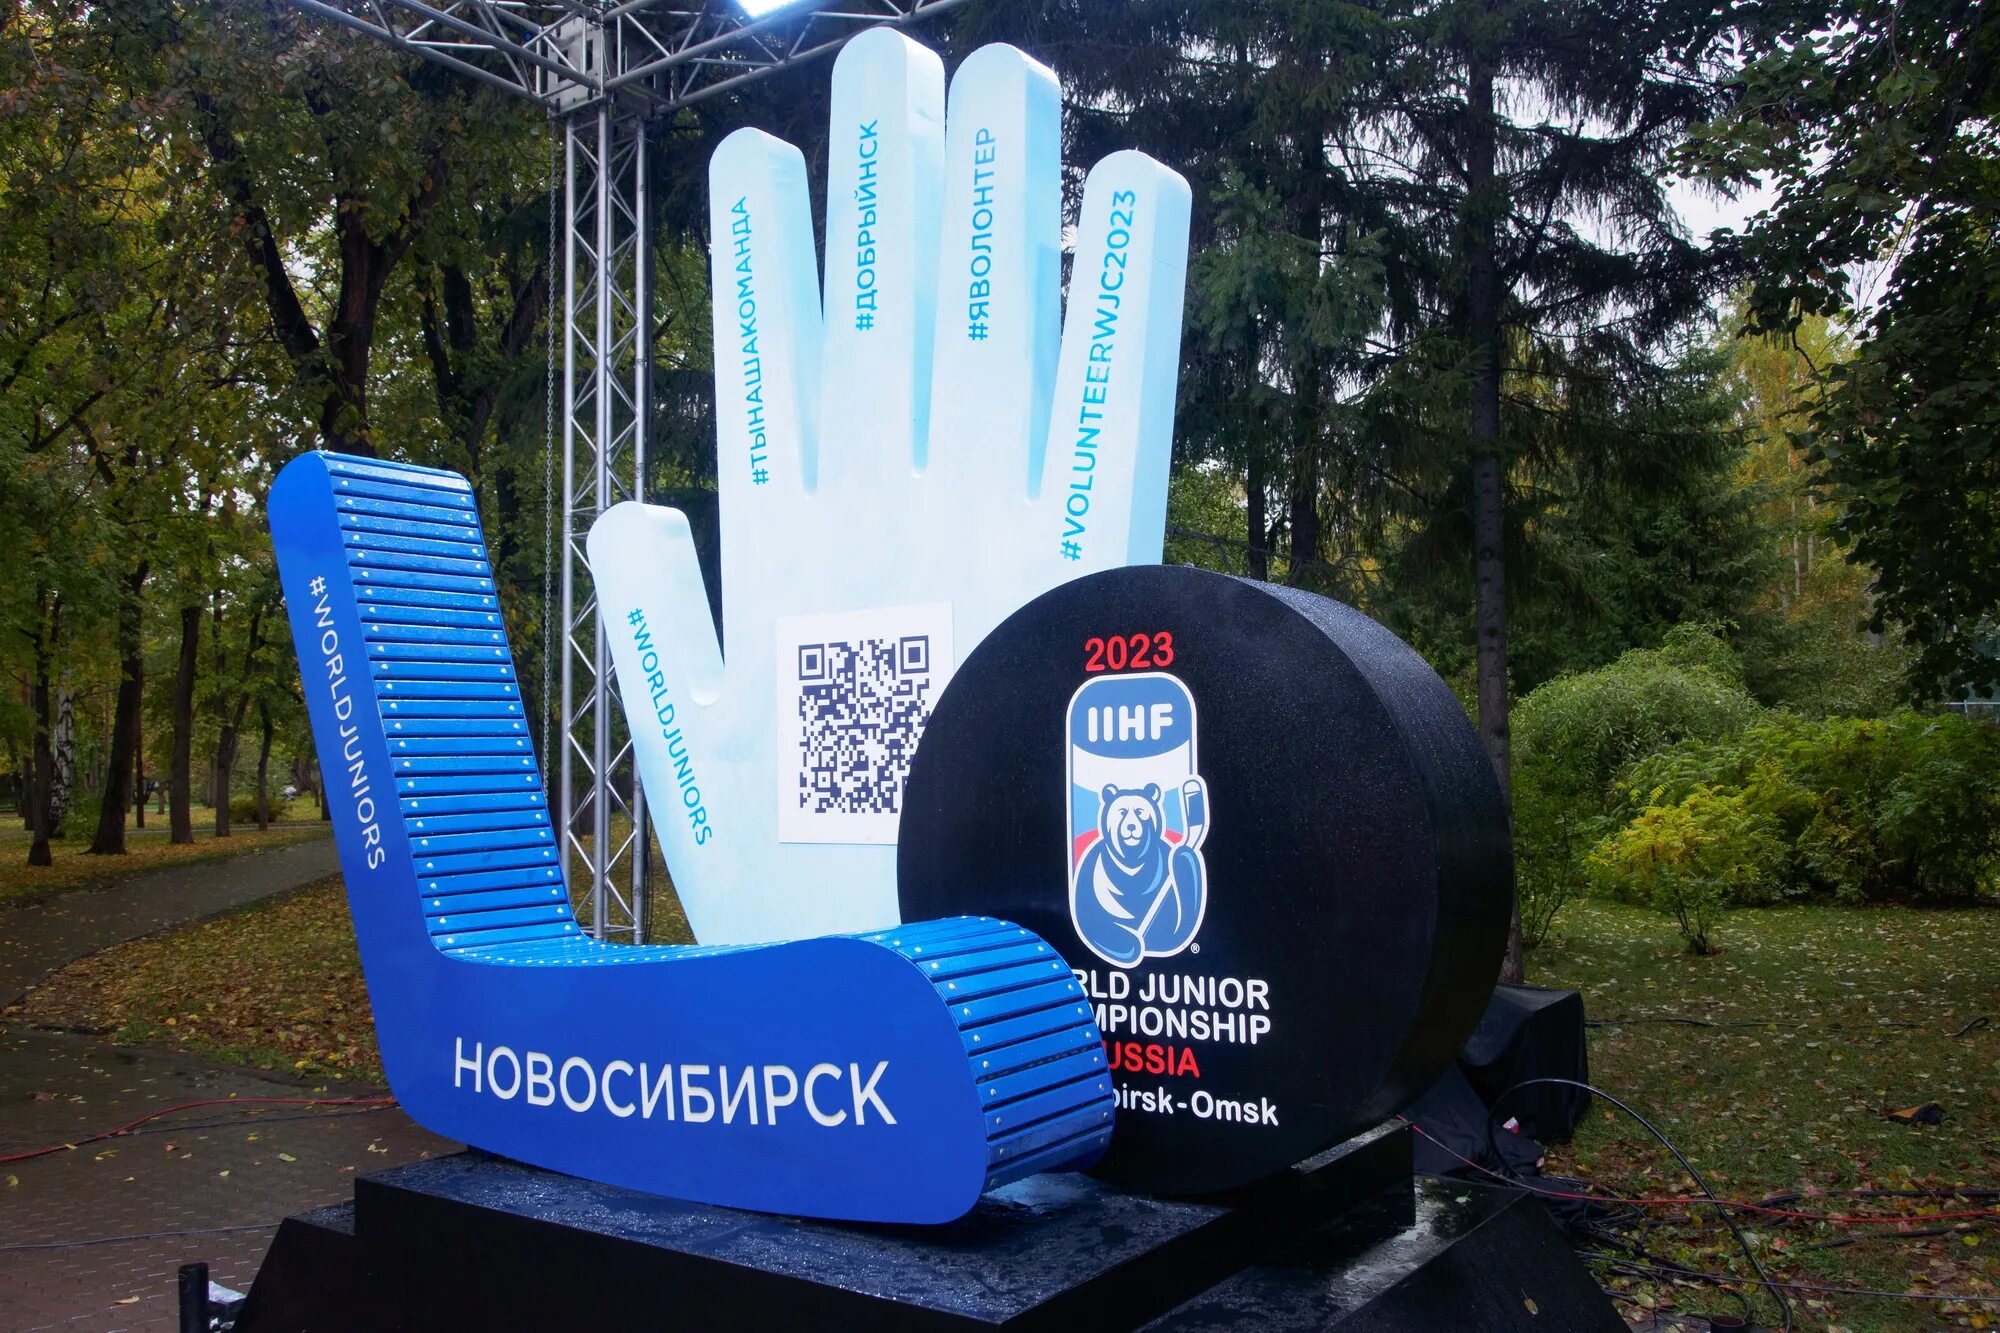 Чемпионат новосибирск 2023